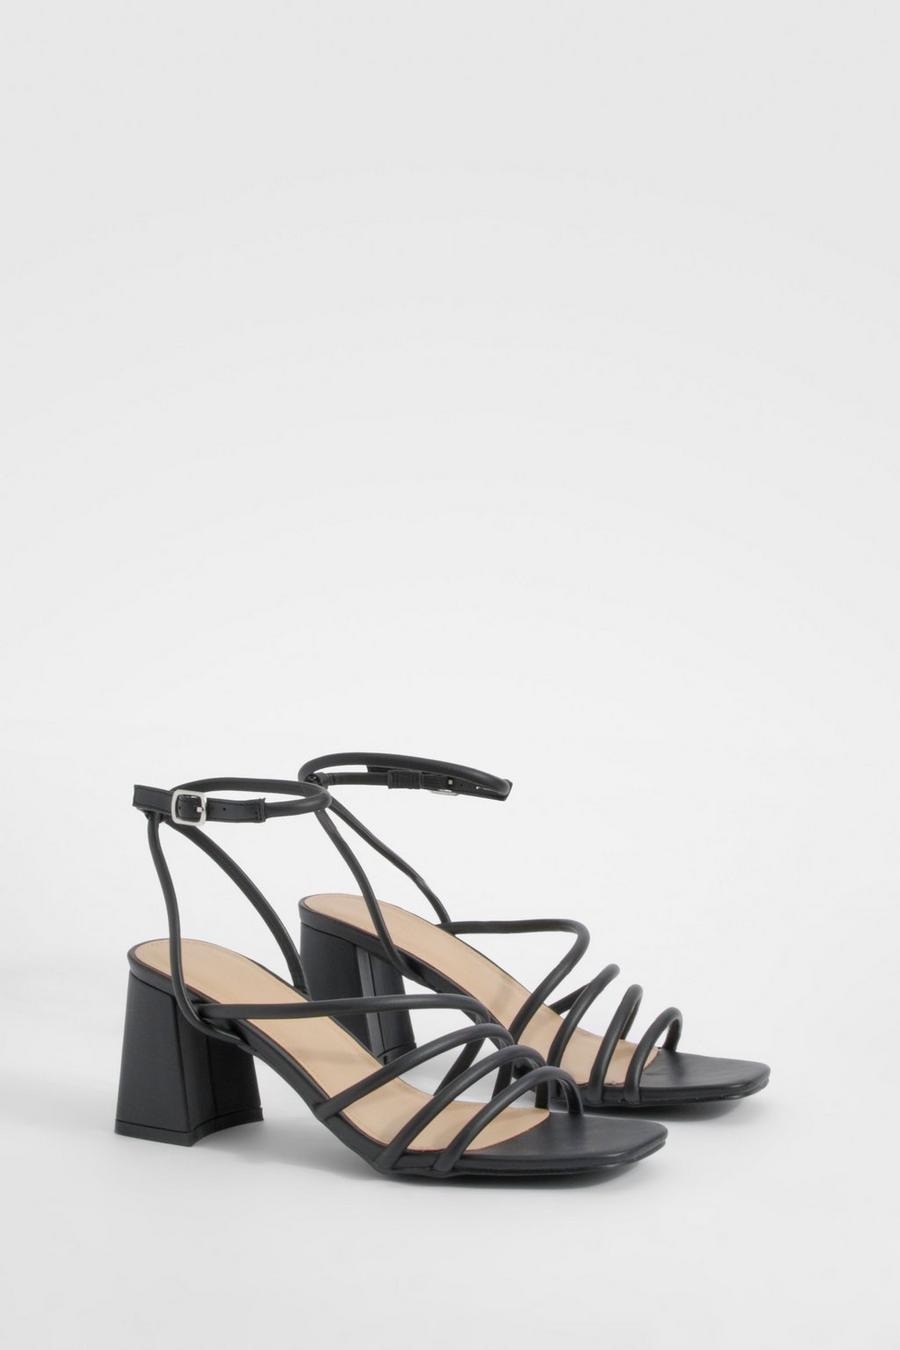 Black embellished sandals summer 2018 trends